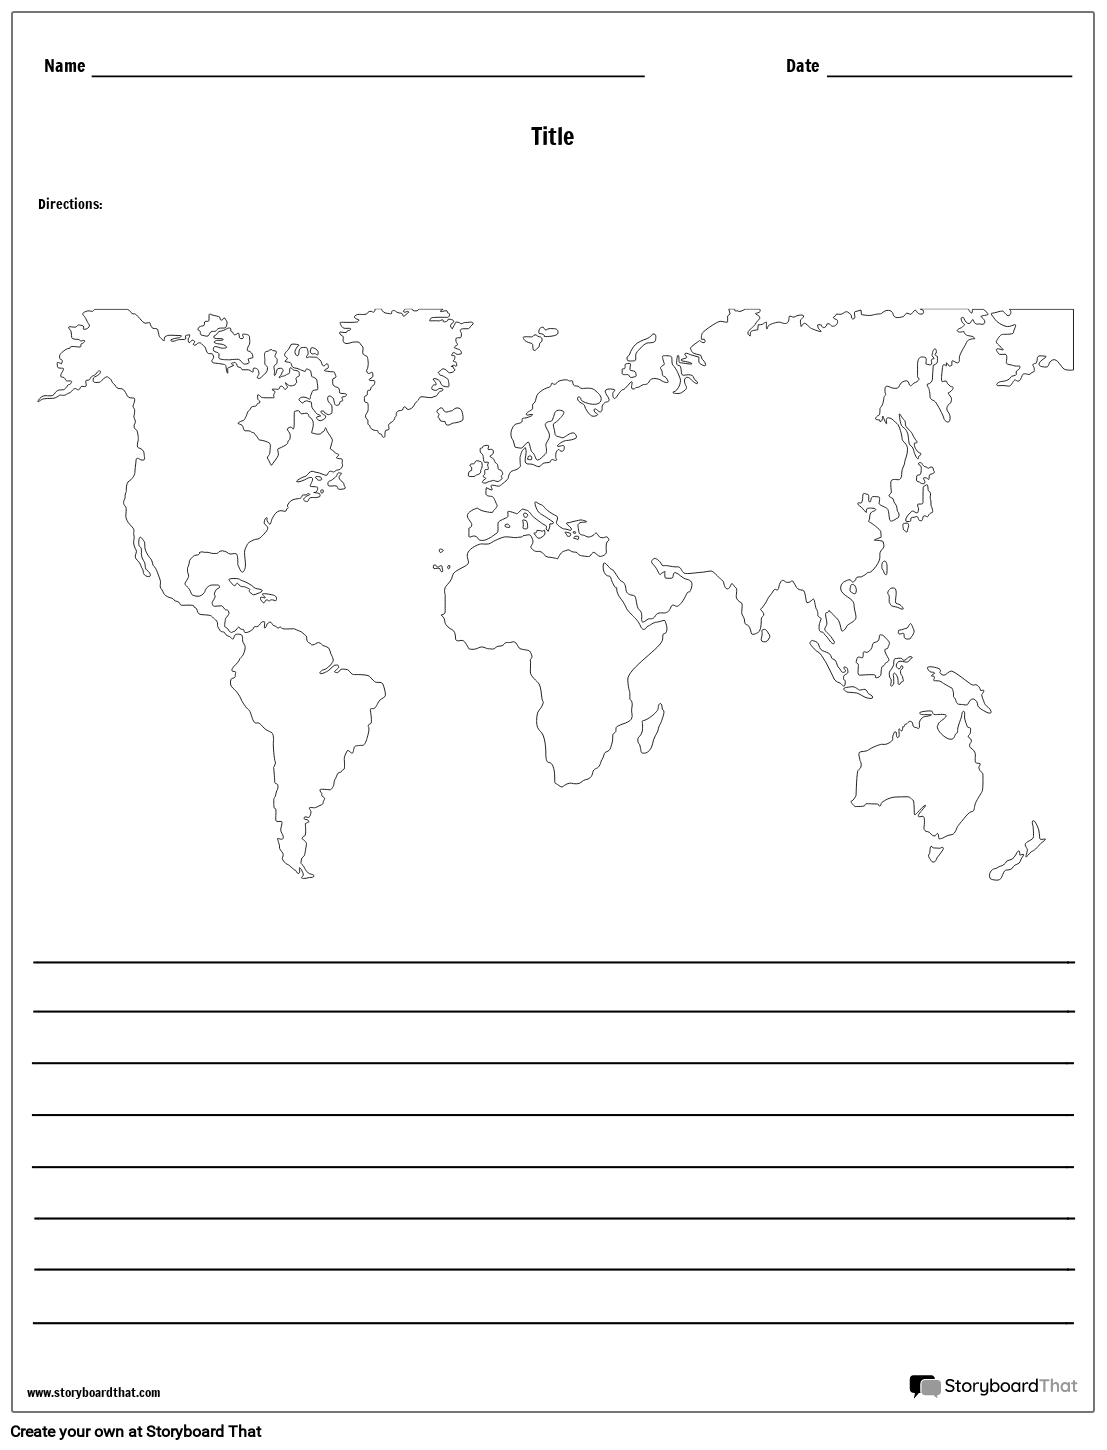 विश्व मानचित्र - लाइनों के साथ